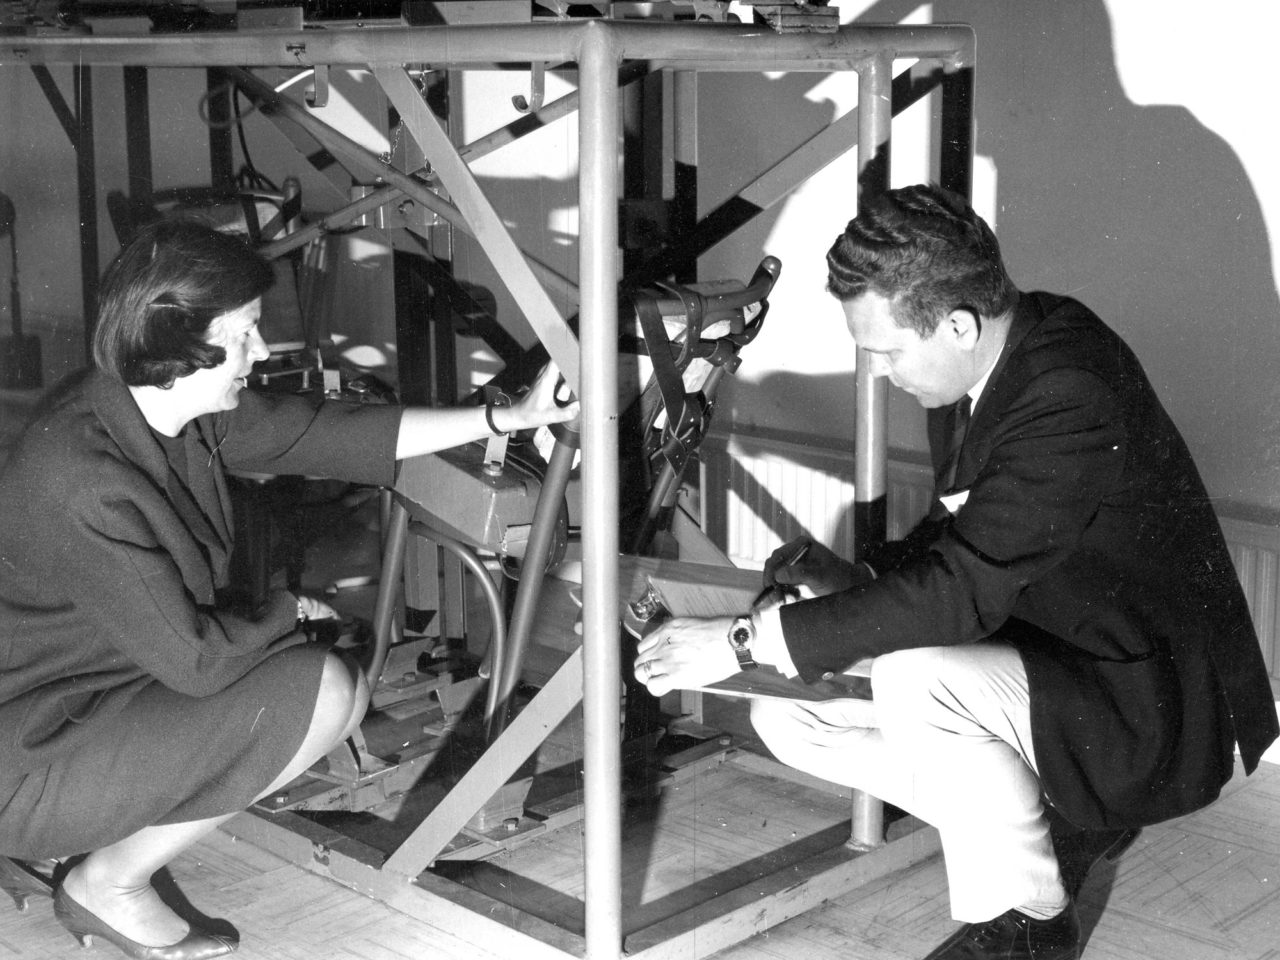 Un homme et une femme style années 1960, Karin Mobring et Nils Hasselstig, accroupis à côté d’une machine de test de meubles.